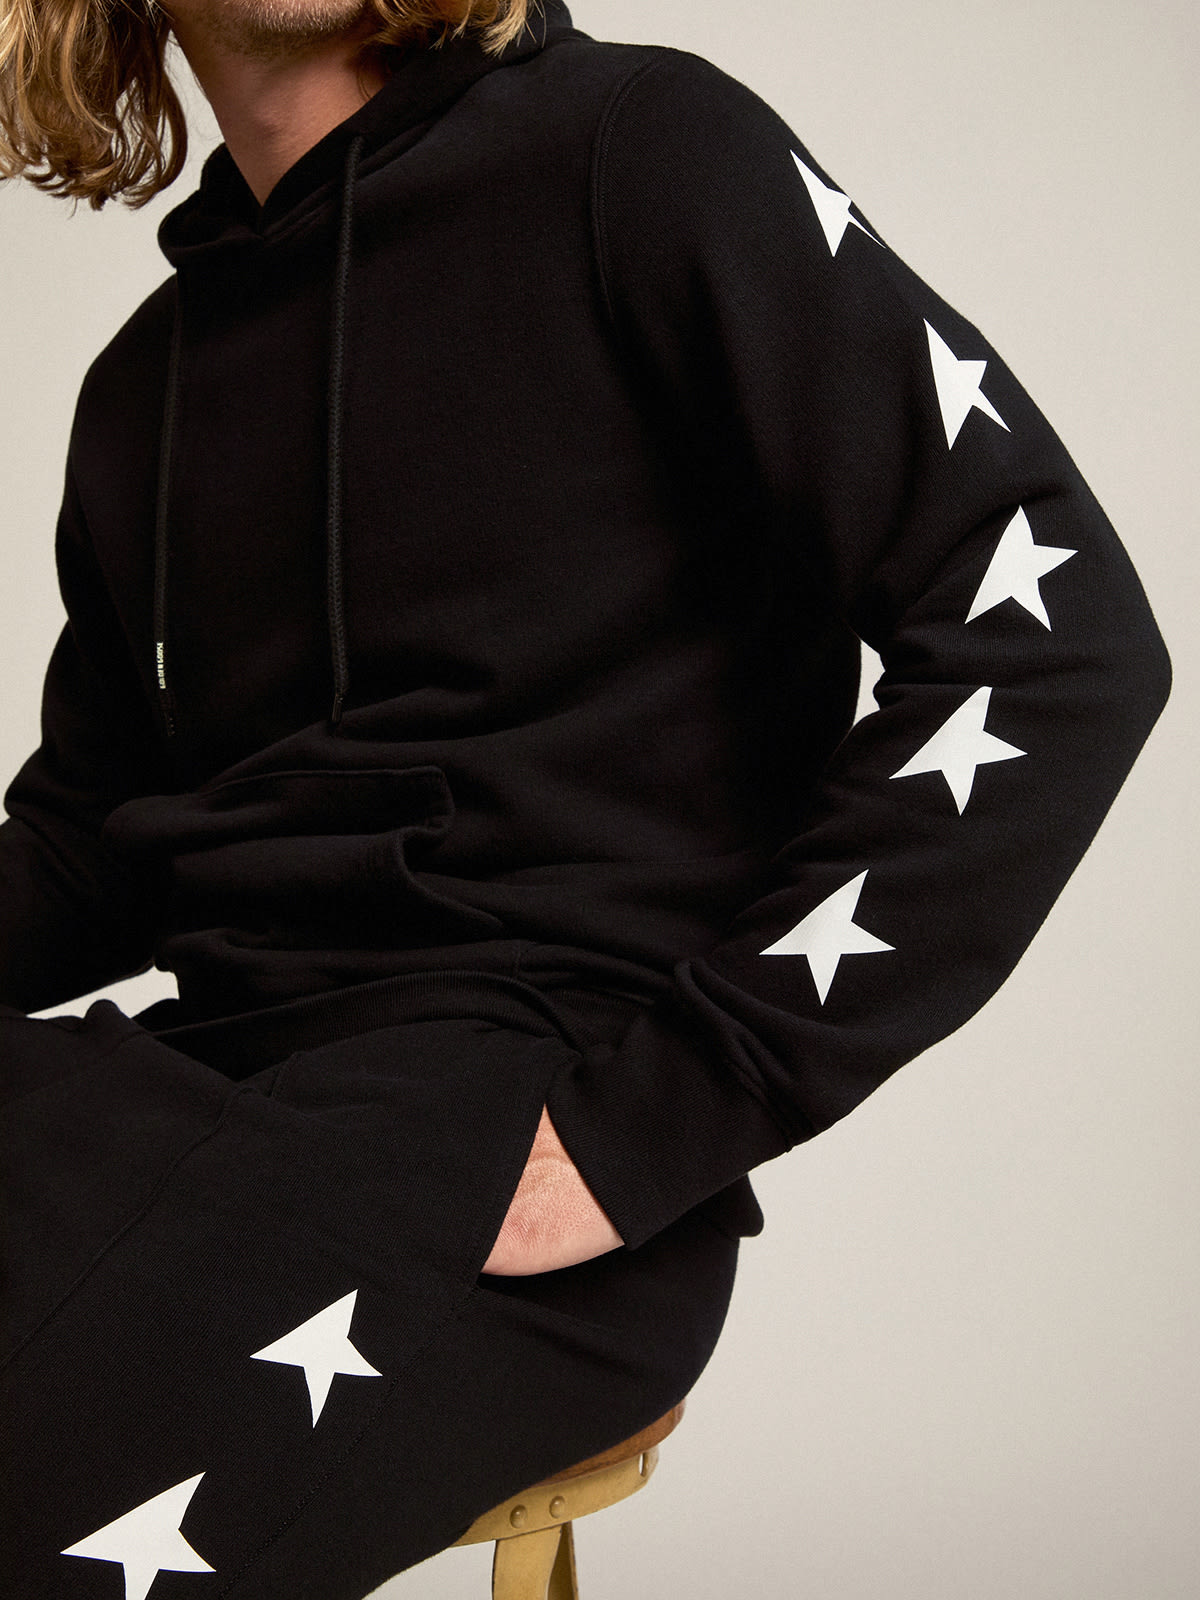 Golden Goose - Pantalon de jogging de couleur noire avec étoiles blanches contrastées in 